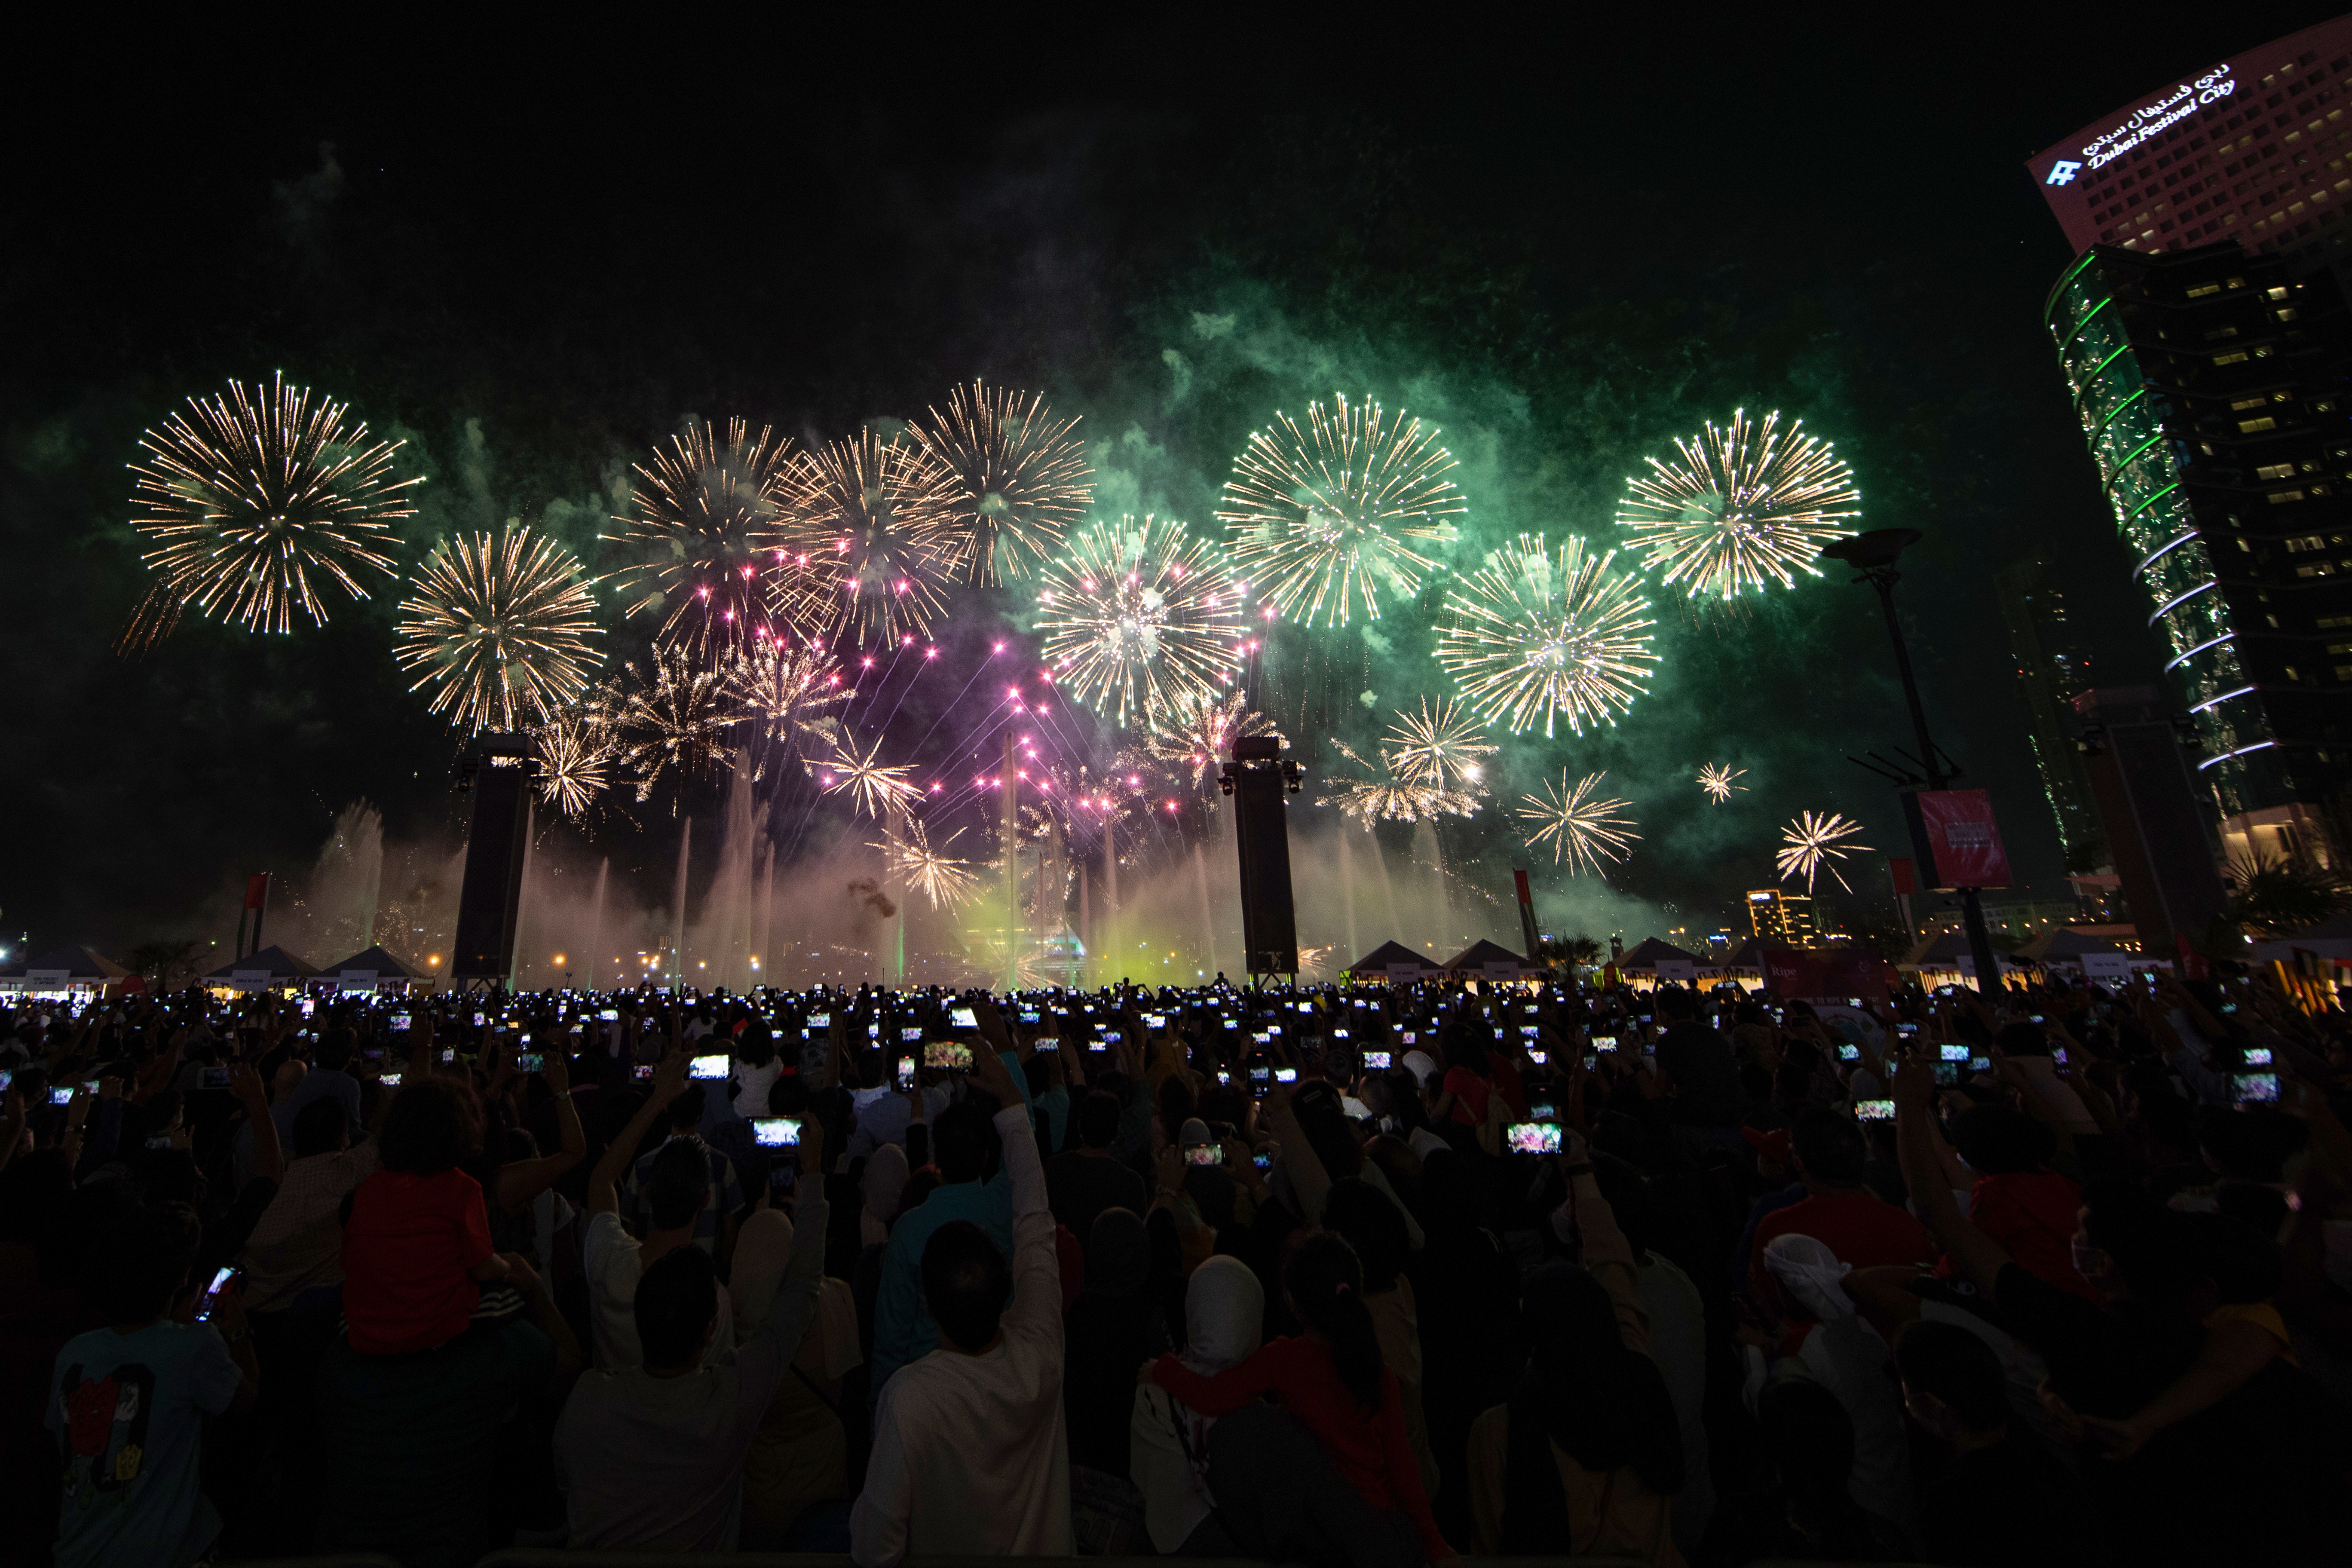 عروض الألعاب النارية تضيء سماء دبي في 2 ديسمبر احتفالا بعيد الاتحاد